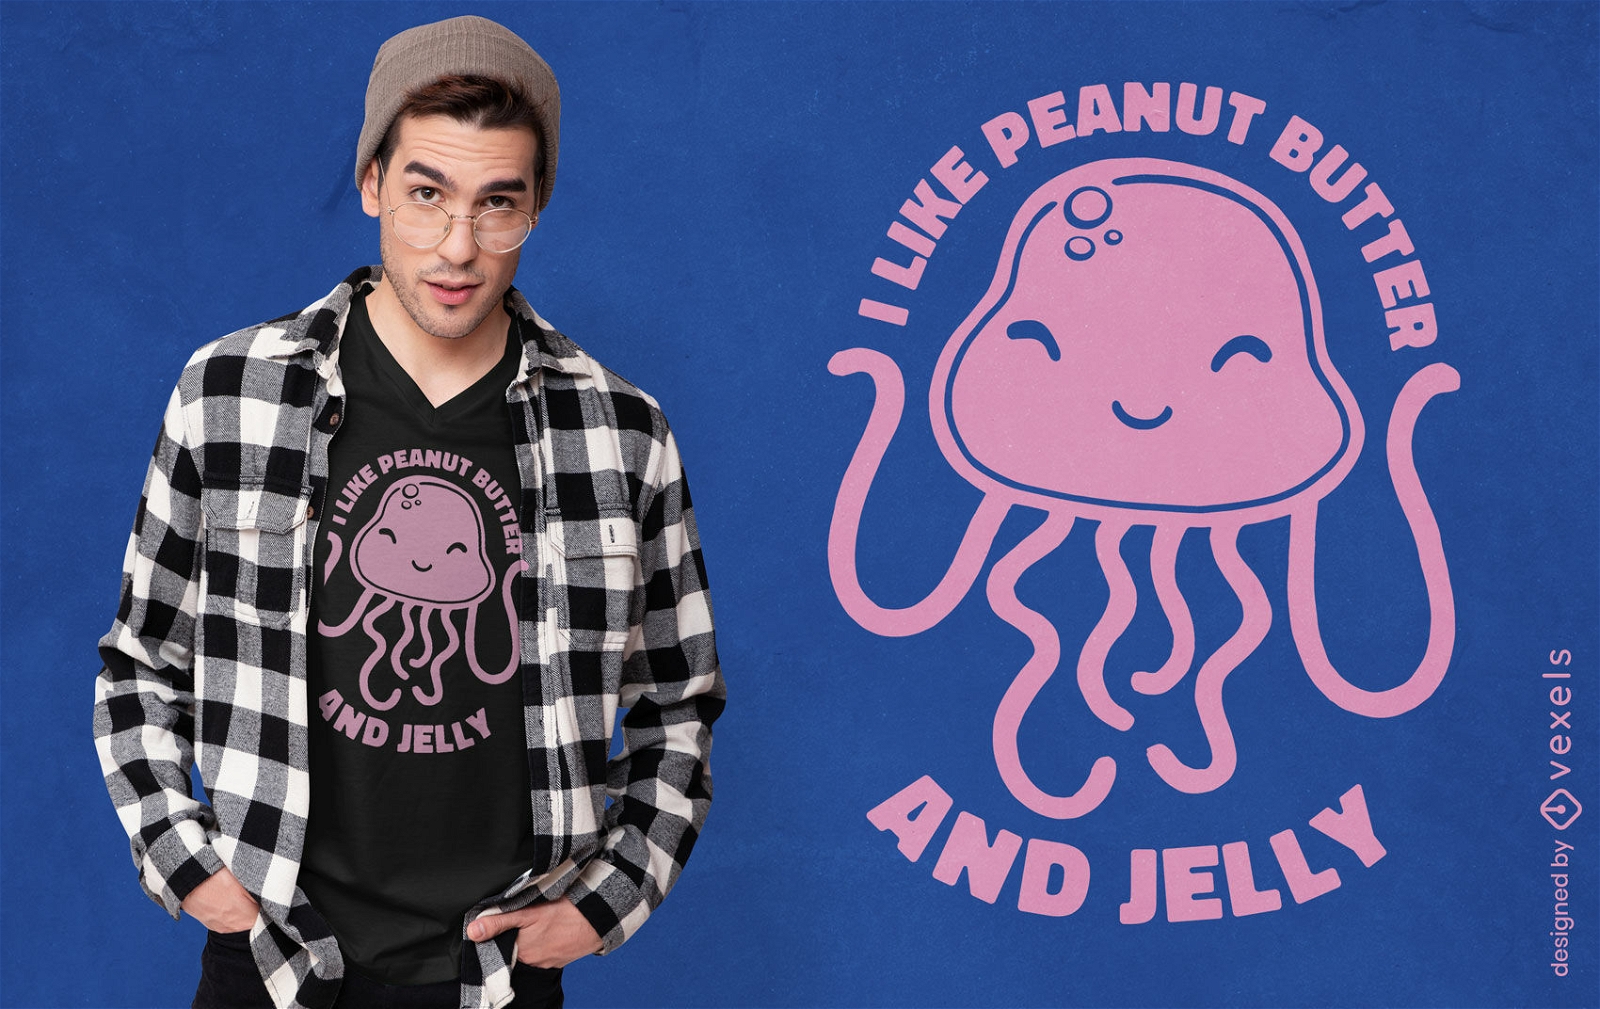 Cute peanut butter jellyfish cartoon t-shirt design